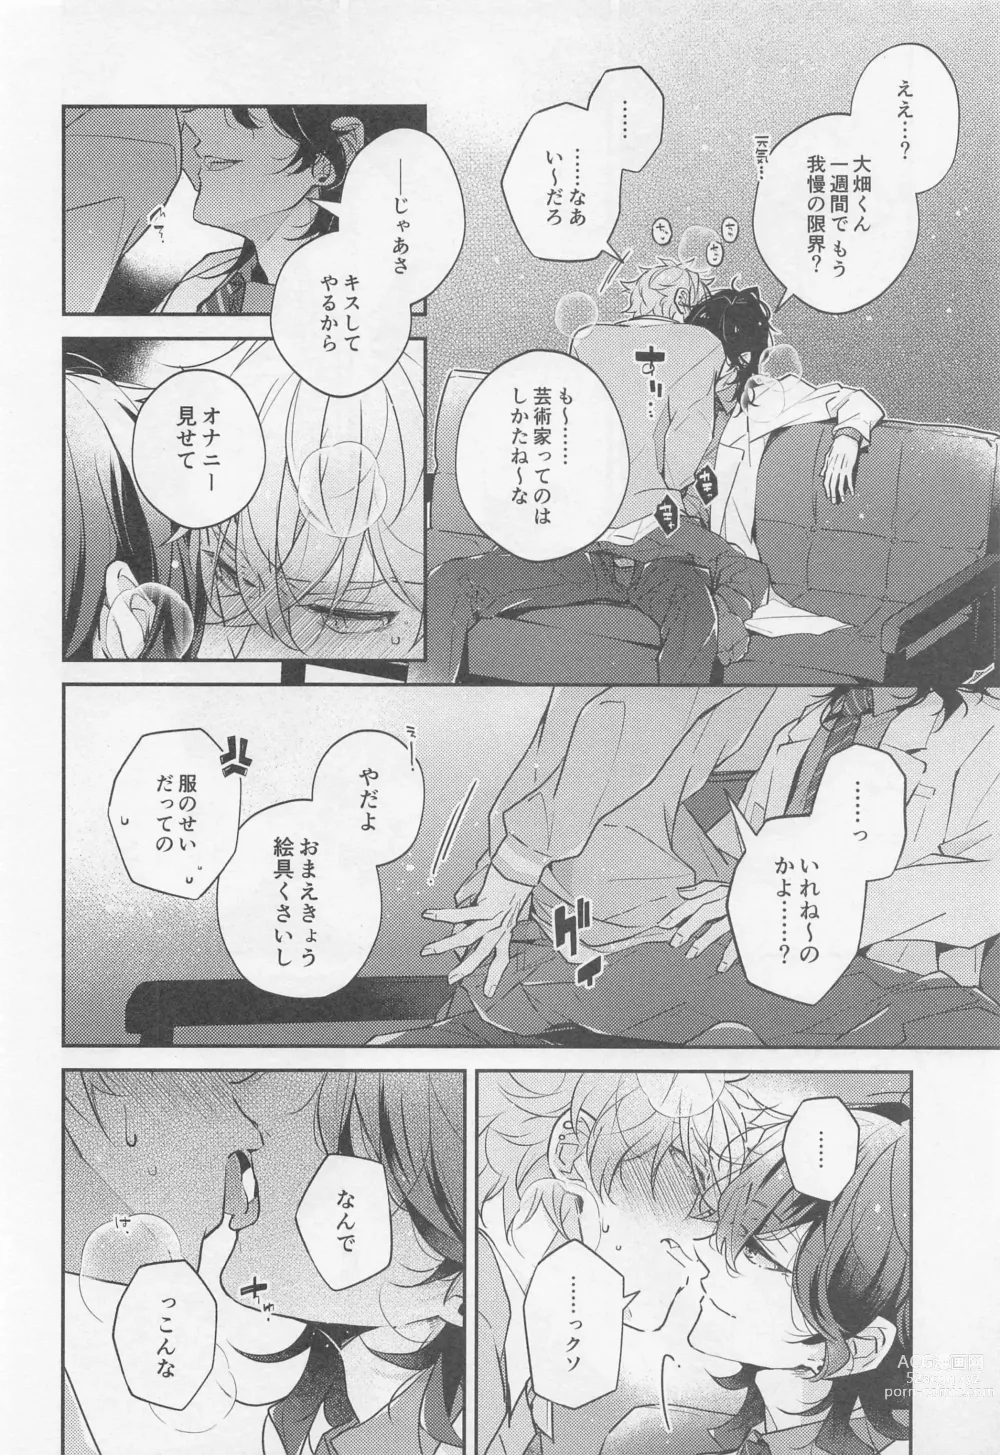 Page 6 of doujinshi Tensai Gekai to Artist Gokko